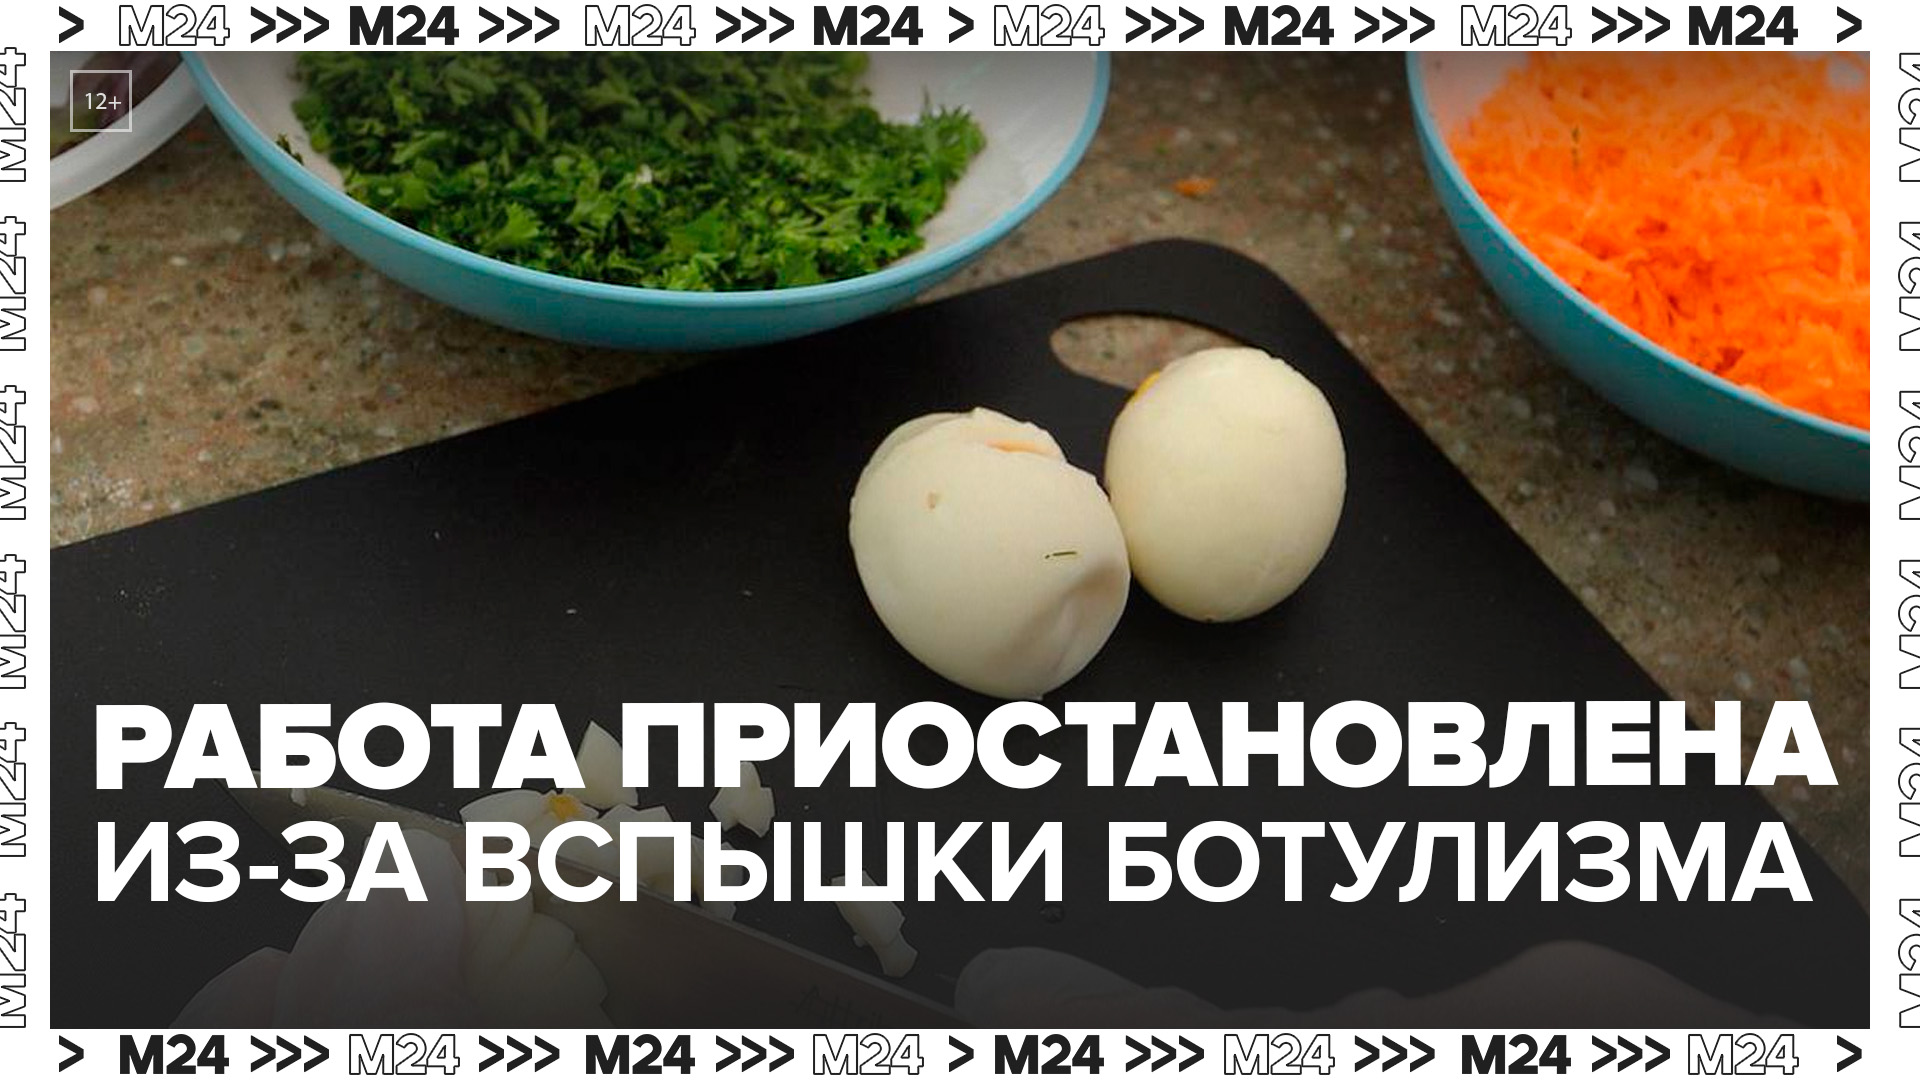 В Москве приостановили работу цеха по изготовлению салатов, вызвавших вспышку ботулизма - Москва 24